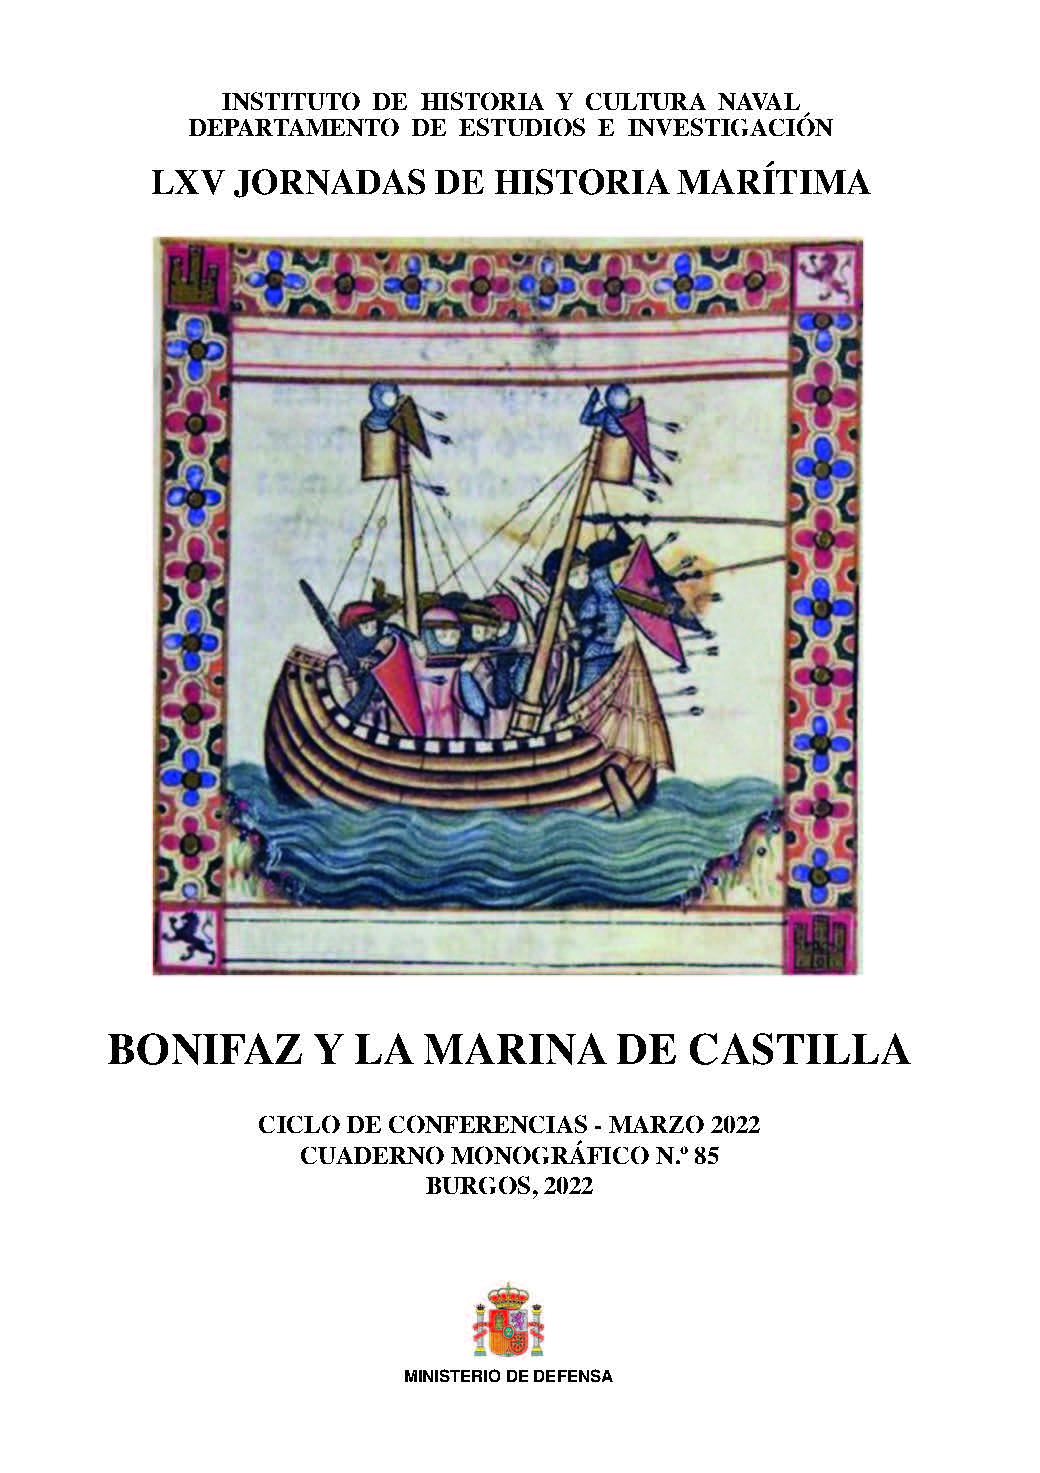 BONIFAZ Y LA MARINA DE CASTILLA